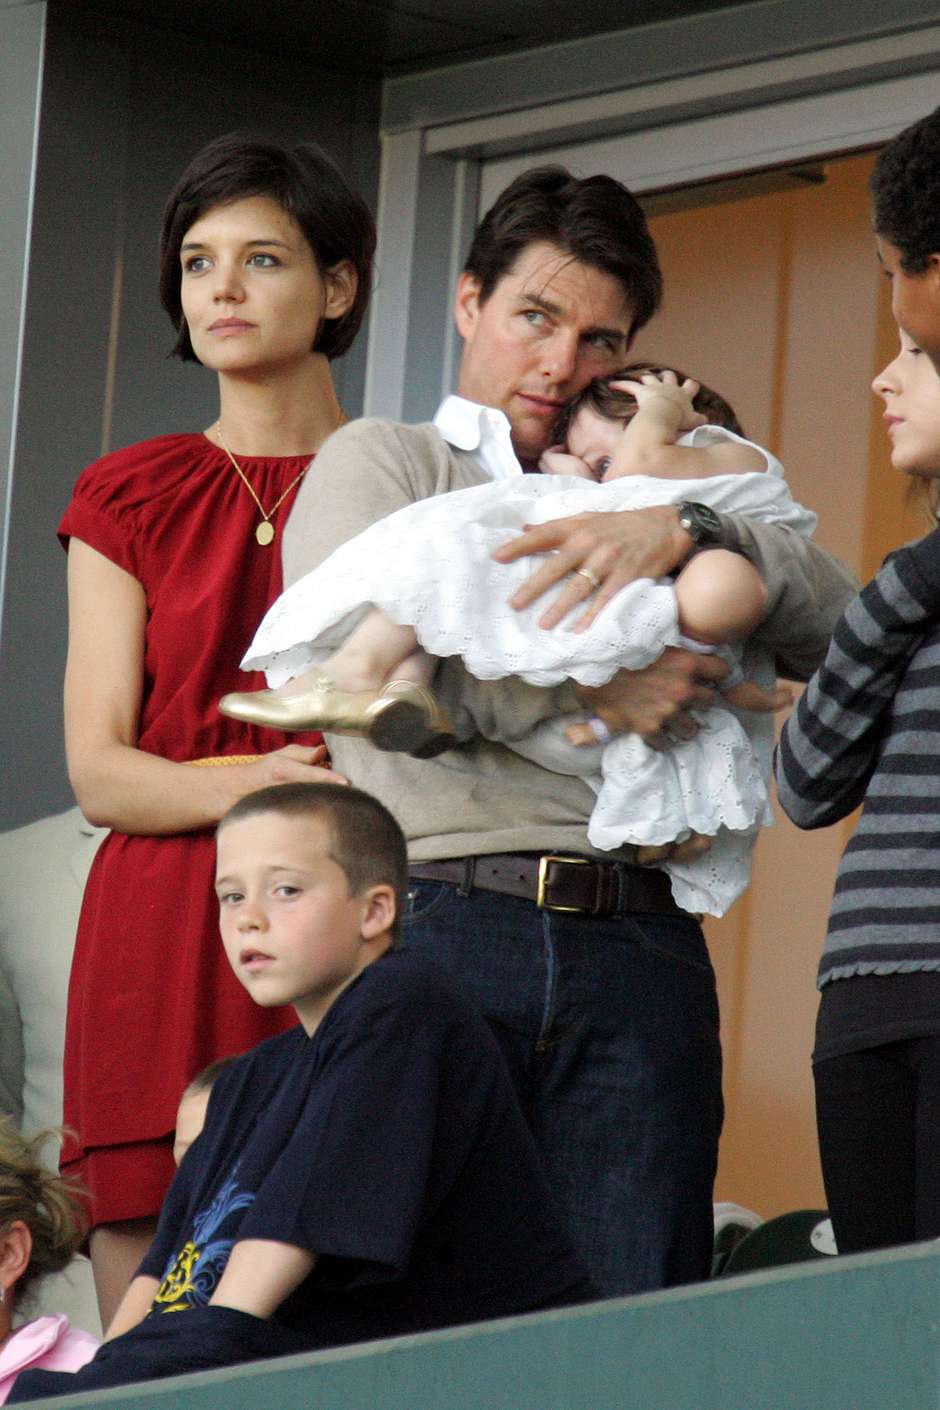 Tom Cruise no v a filha Suri h quase um ano, diz site Fon